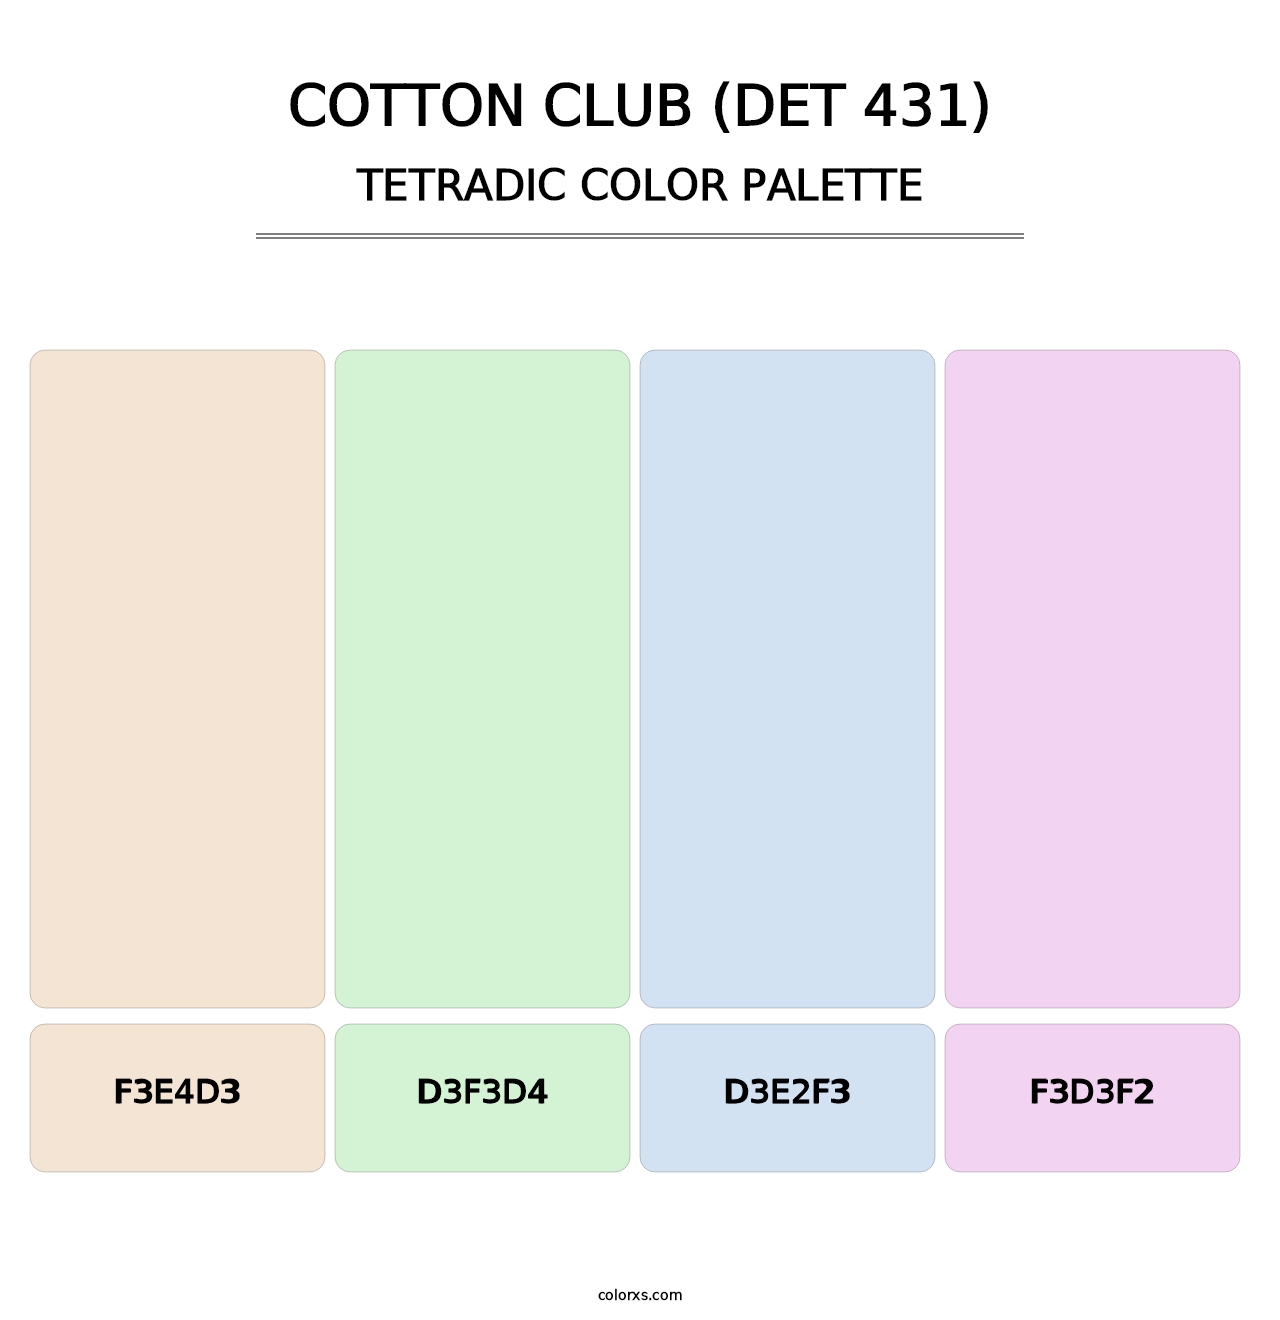 Cotton Club (DET 431) - Tetradic Color Palette